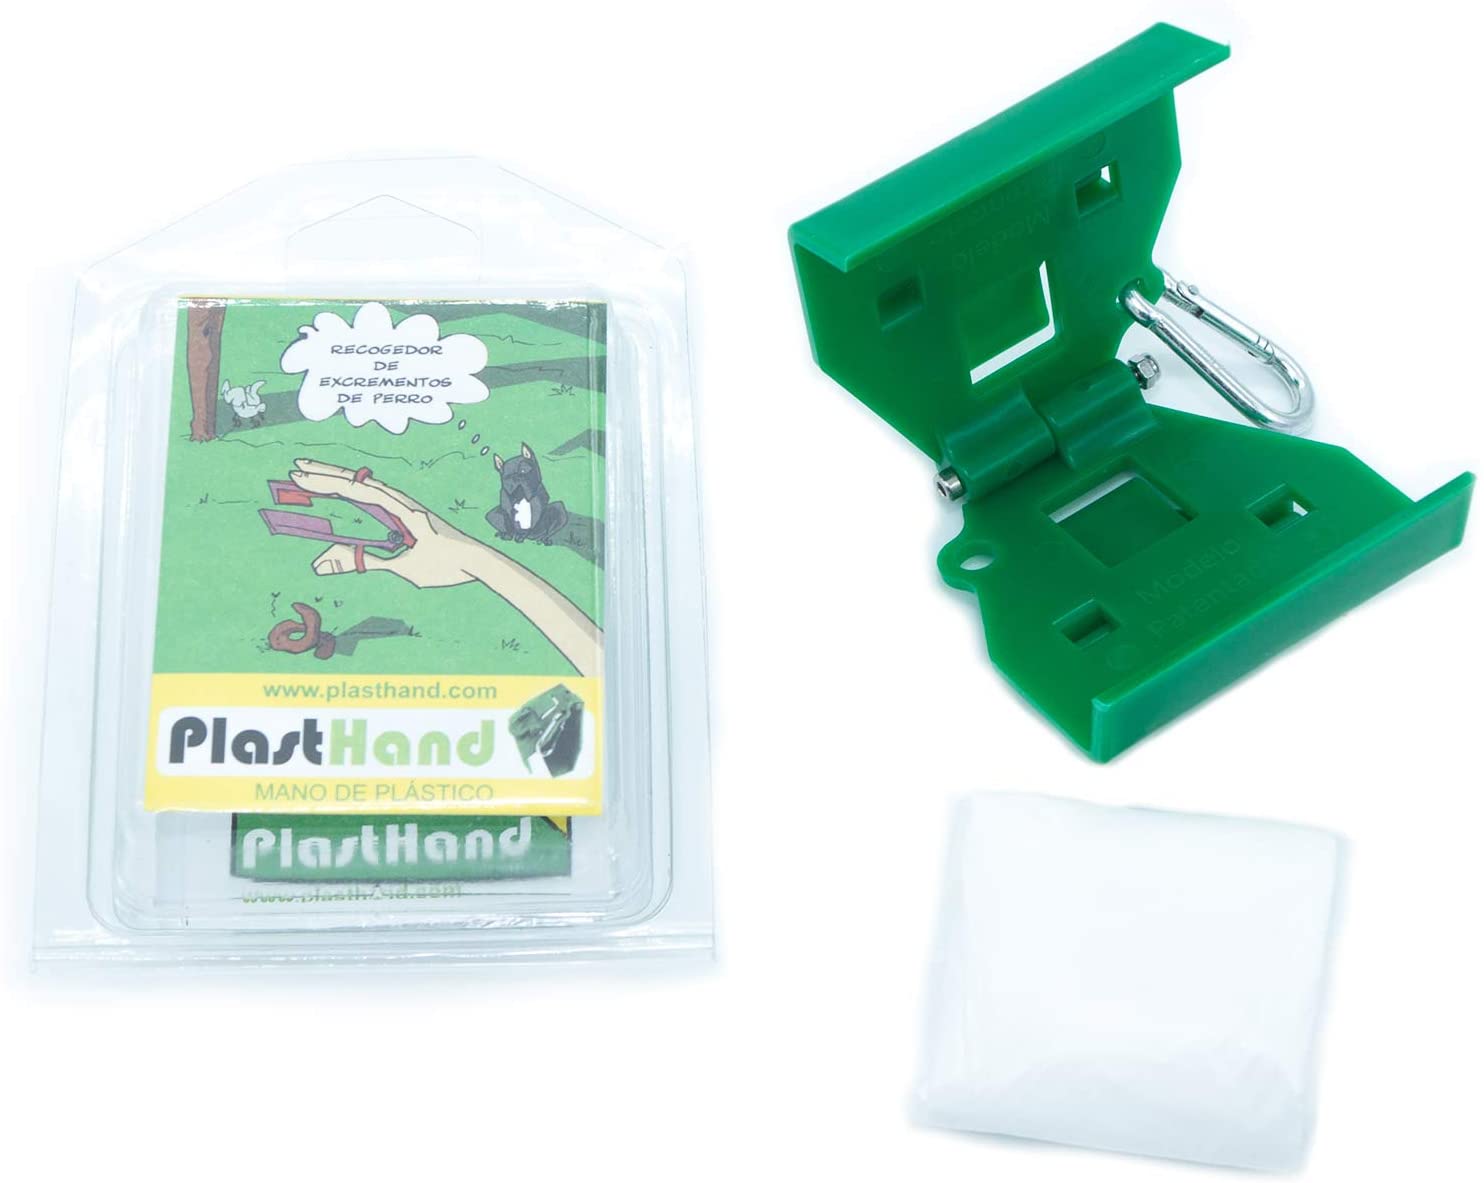  PlastHand Recogedor de Excrementos para Perros Mano de Plástico Recogedora de Excrementos Fabricado en España 